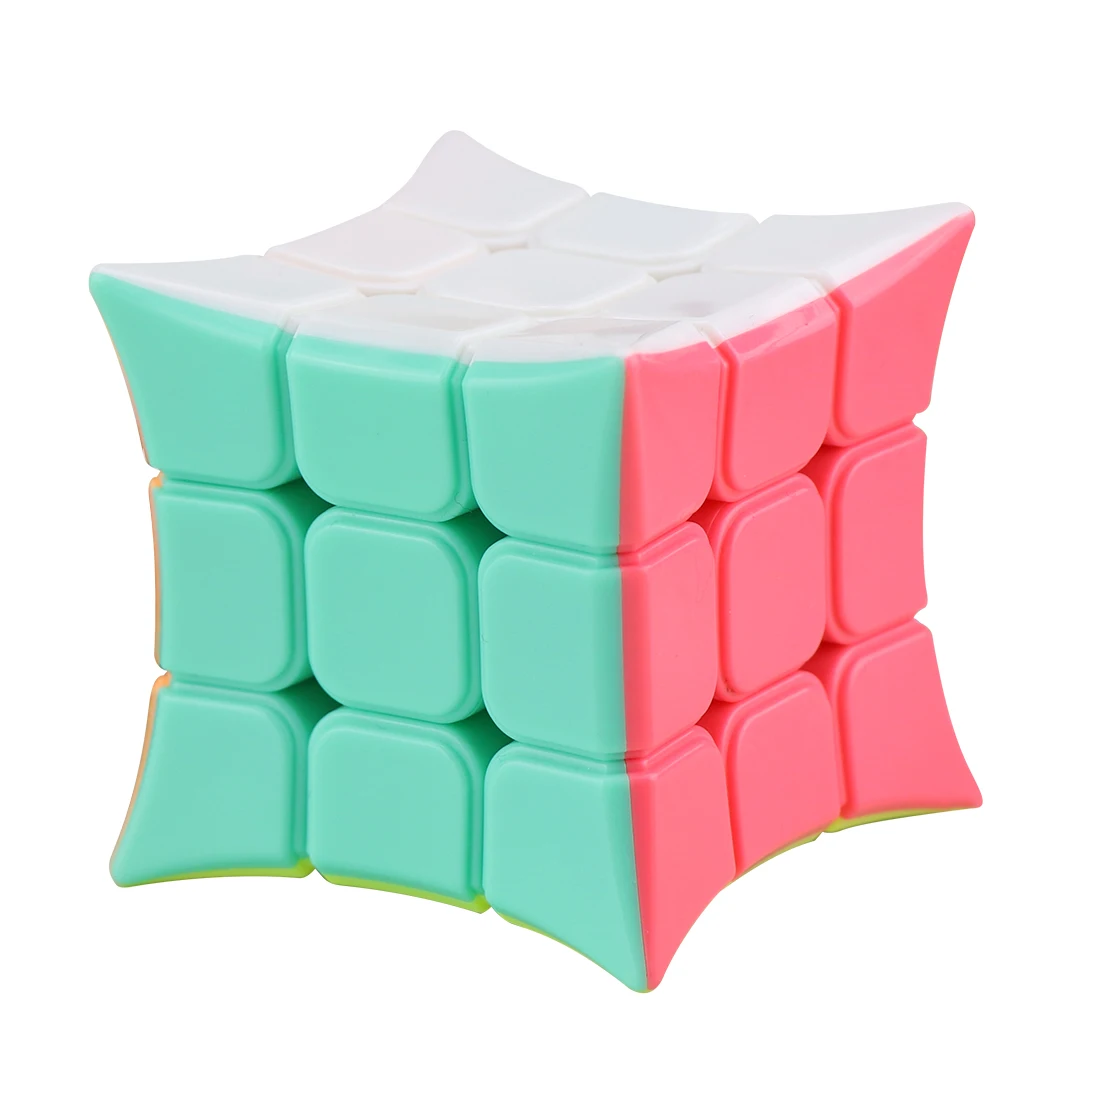 Yongjun Jinjiao 3x3x3 волшебный куб скоростной куб головоломка игрушка для детей и взрослых Набор Для Тренировки Мозга